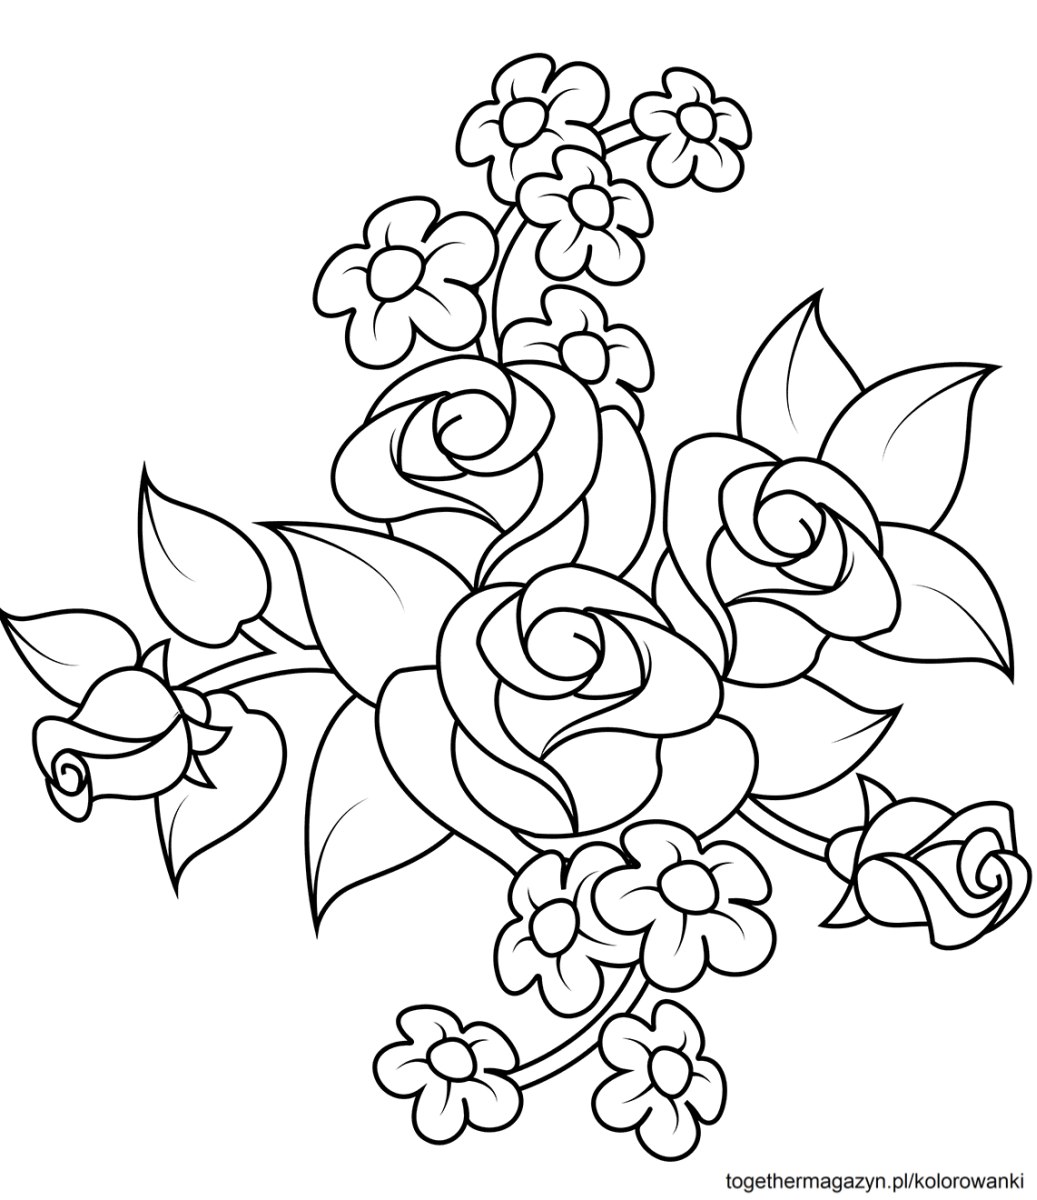 Kwiaty kolorowanki do druku - pobierz i pokoloruj bukiet róż